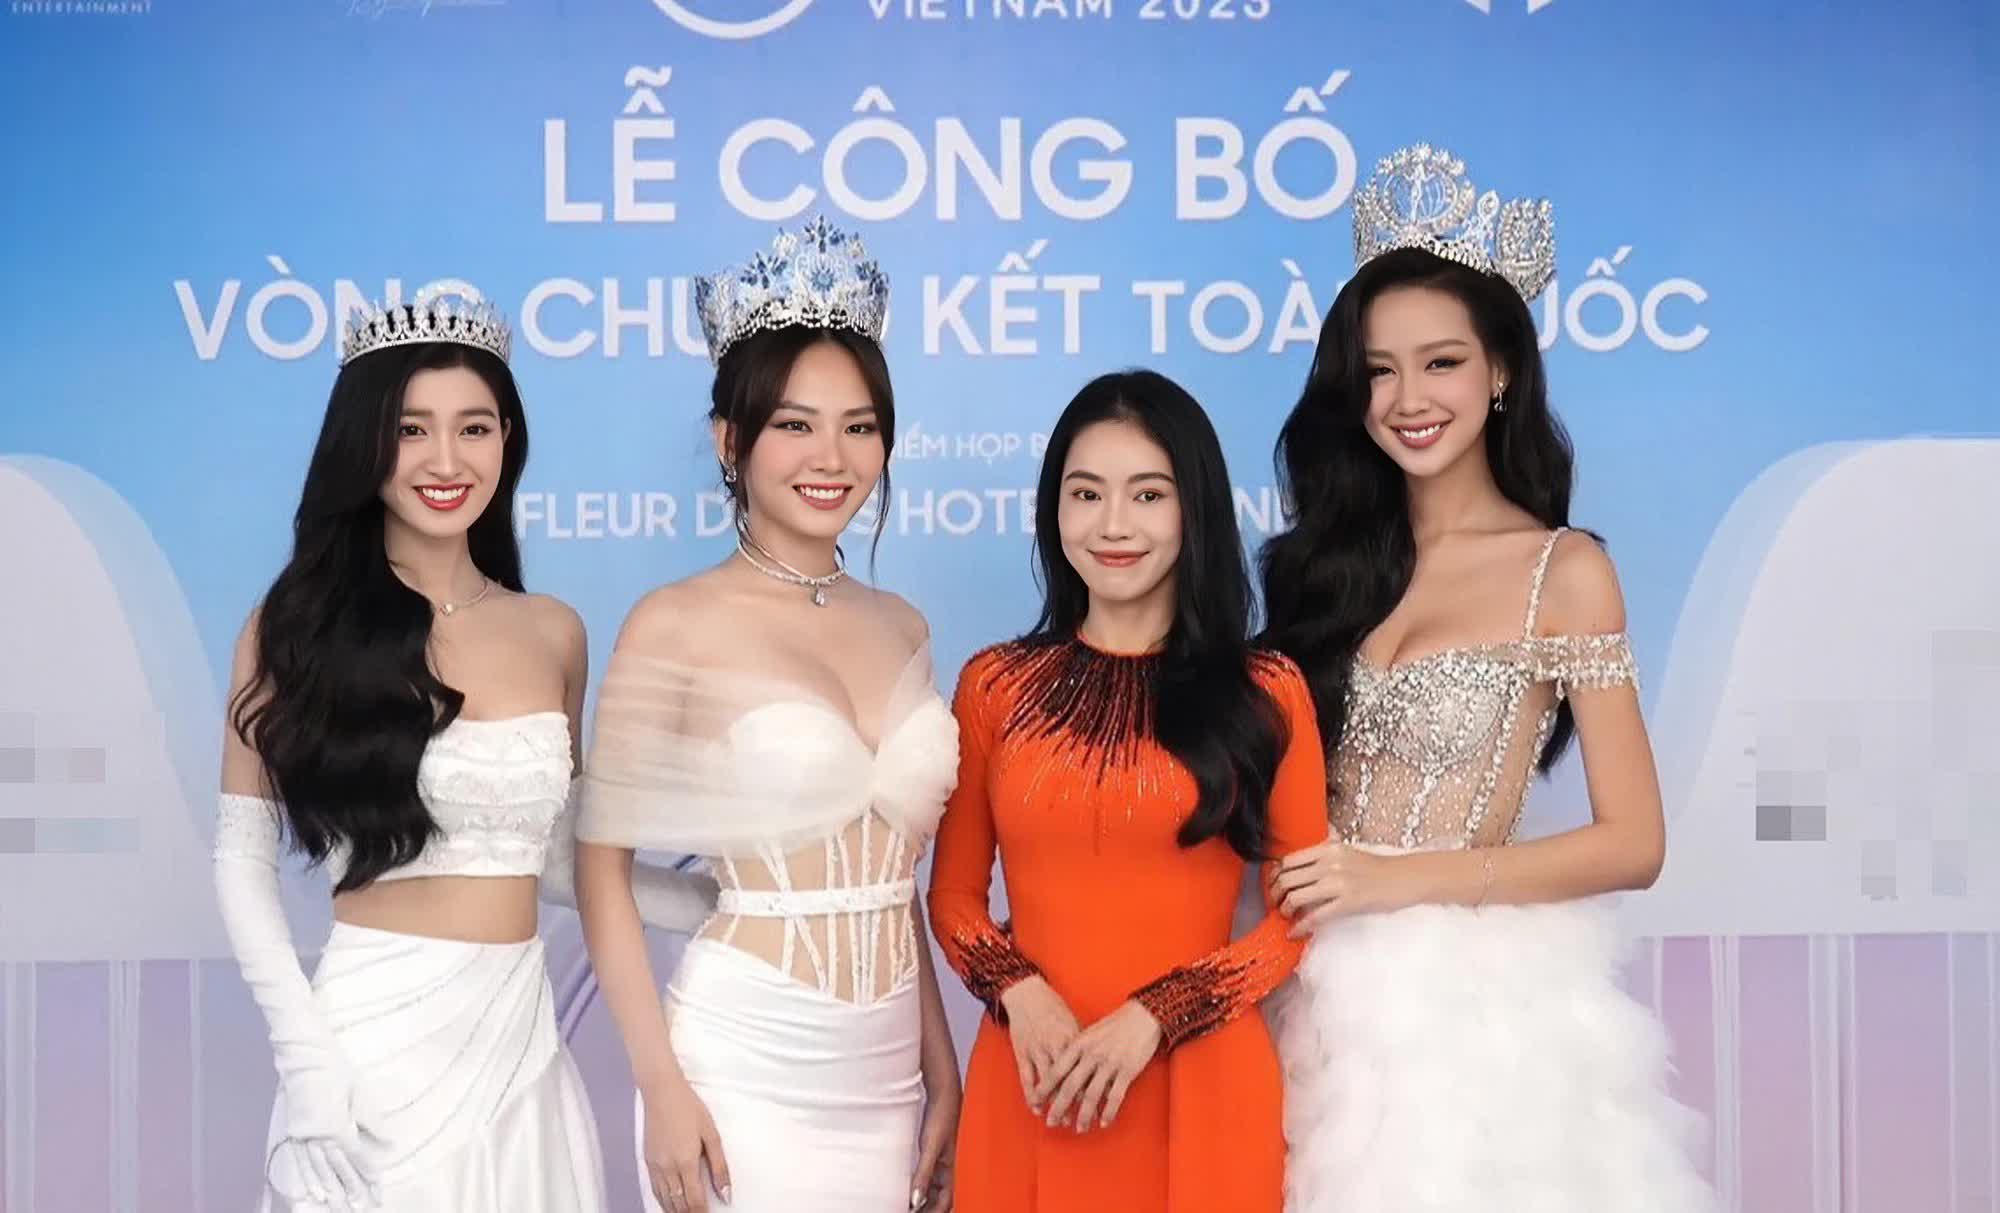 Thảm đỏ lễ công bố vòng chung kết Miss World Vietnam 2023: Màn đọ sắc của Thanh Thủy - Tiểu Vy gây chú ý - Ảnh 1.